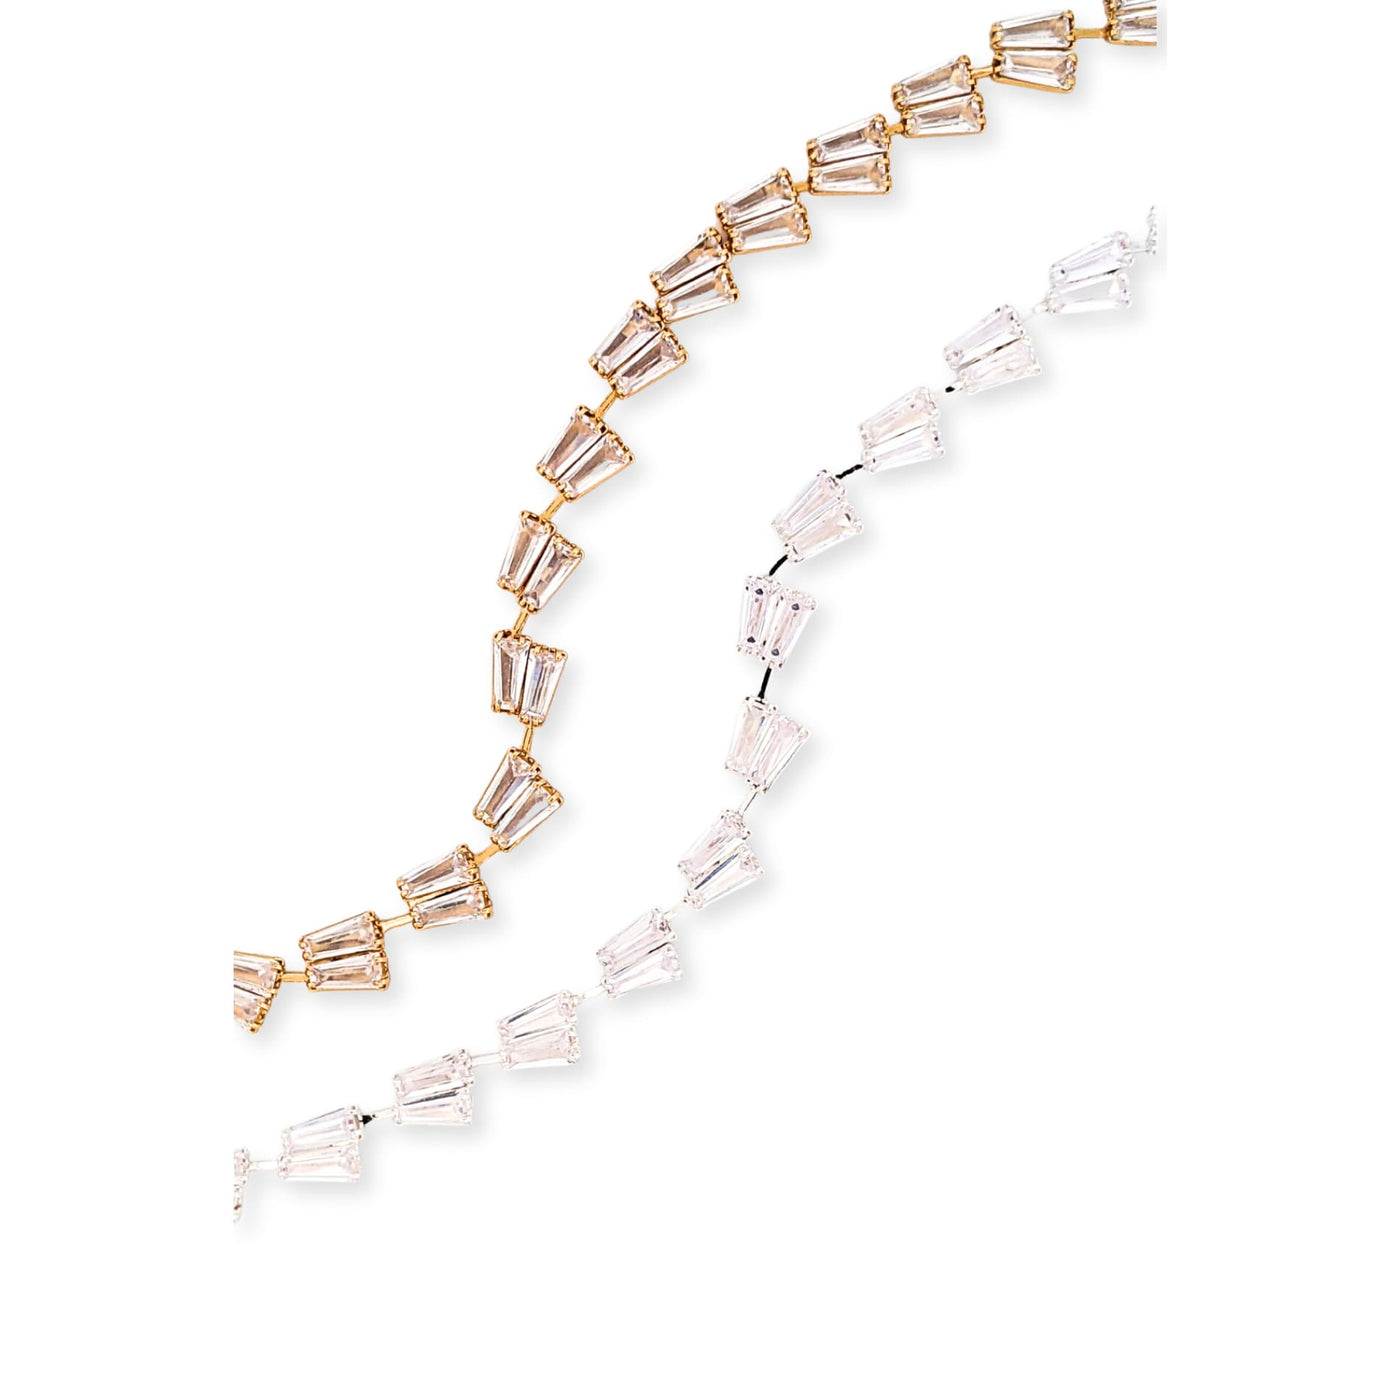 The Harmony Bracelet - 190 Jewelry